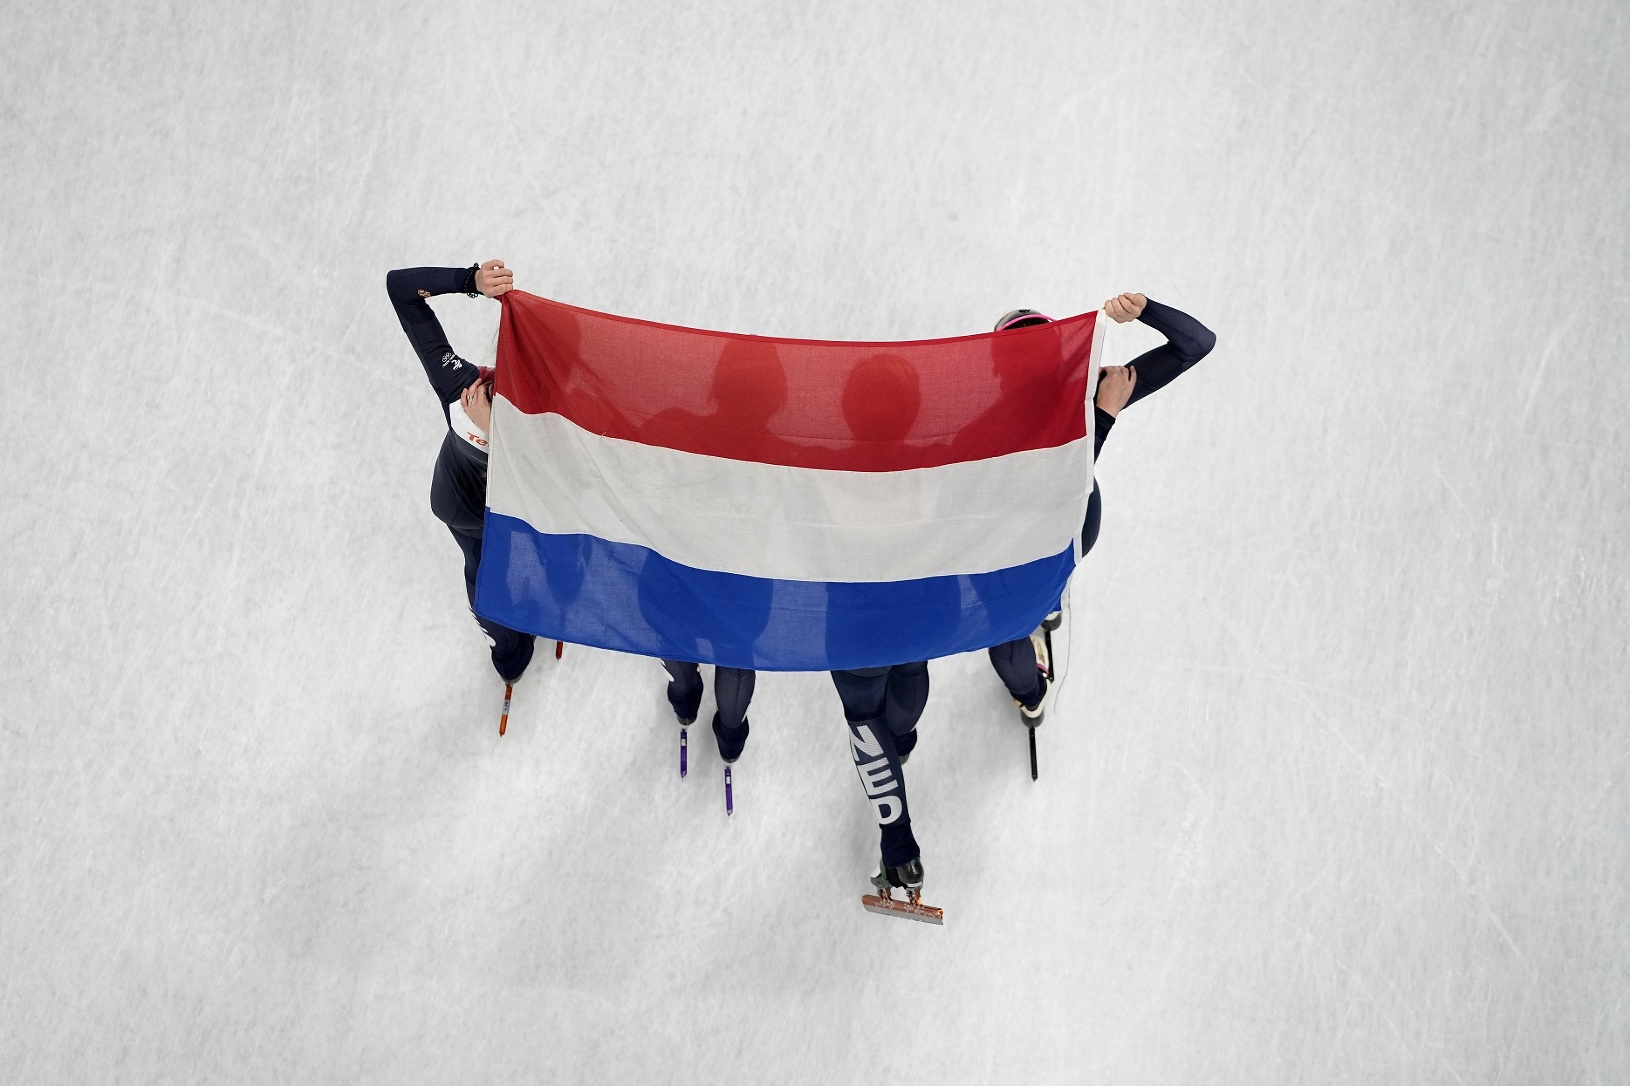 Šortrekárky Holandska sa tešia